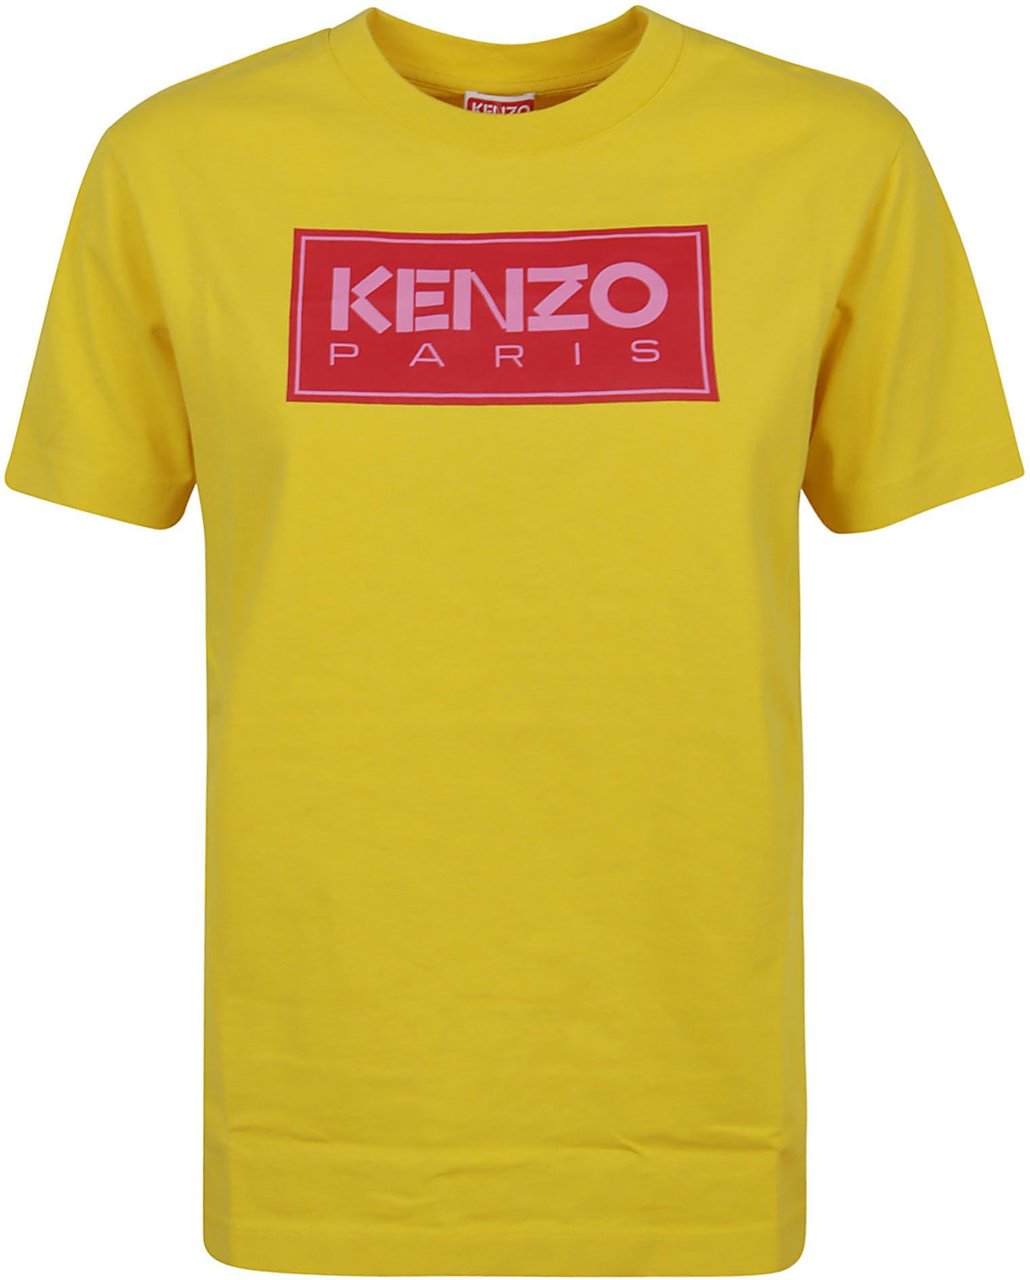 Kenzo Paris Loose T-Shirt Geel